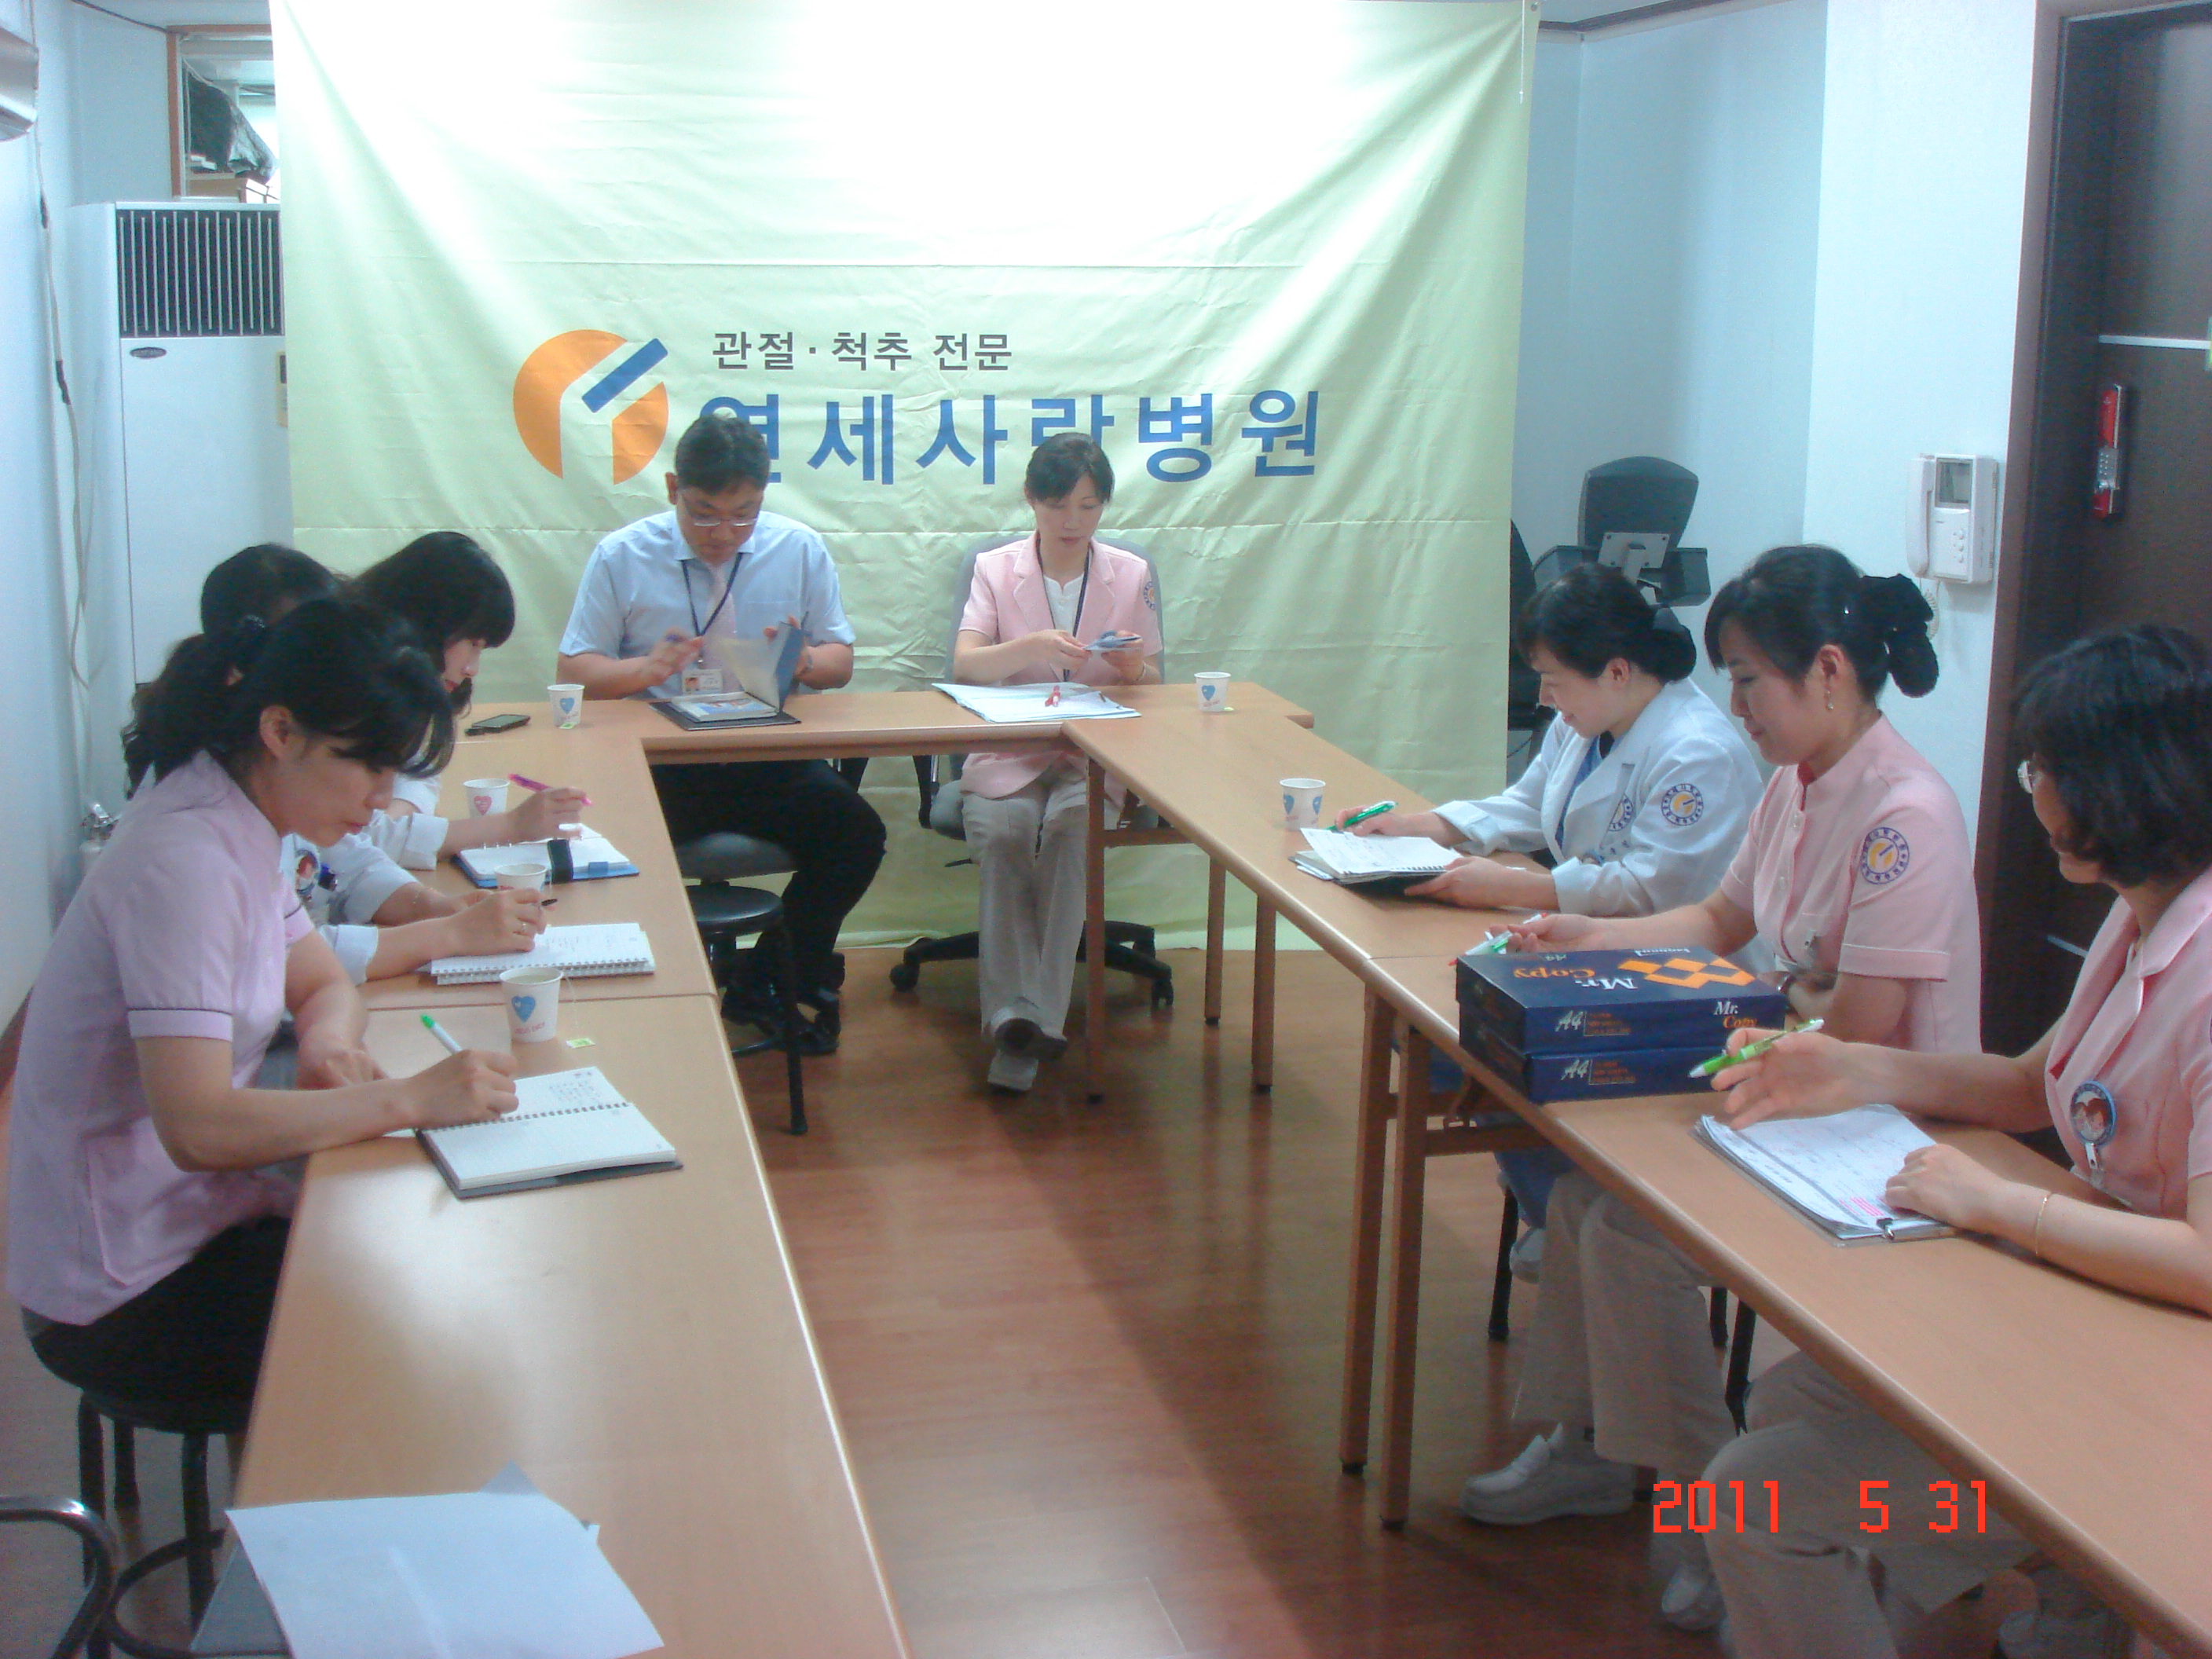 [강북점] 2011년 5월 31일 - 실무진 회의 개최 게시글의 1번째 첨부파일입니다.